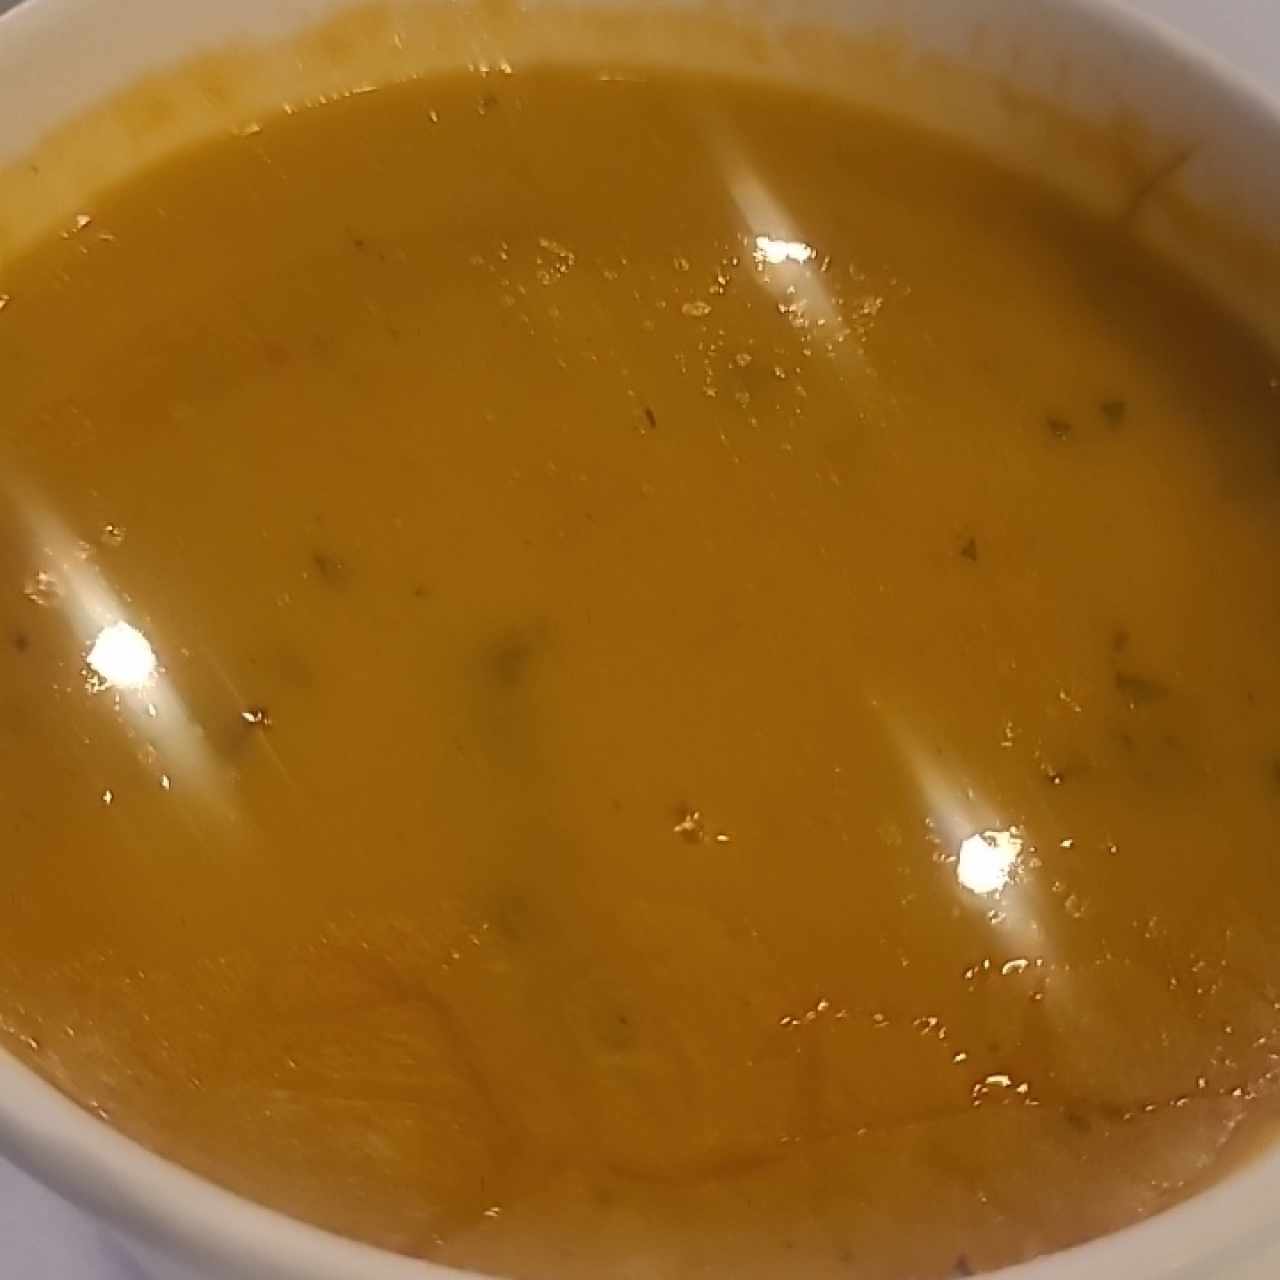 sopa de mariscos 